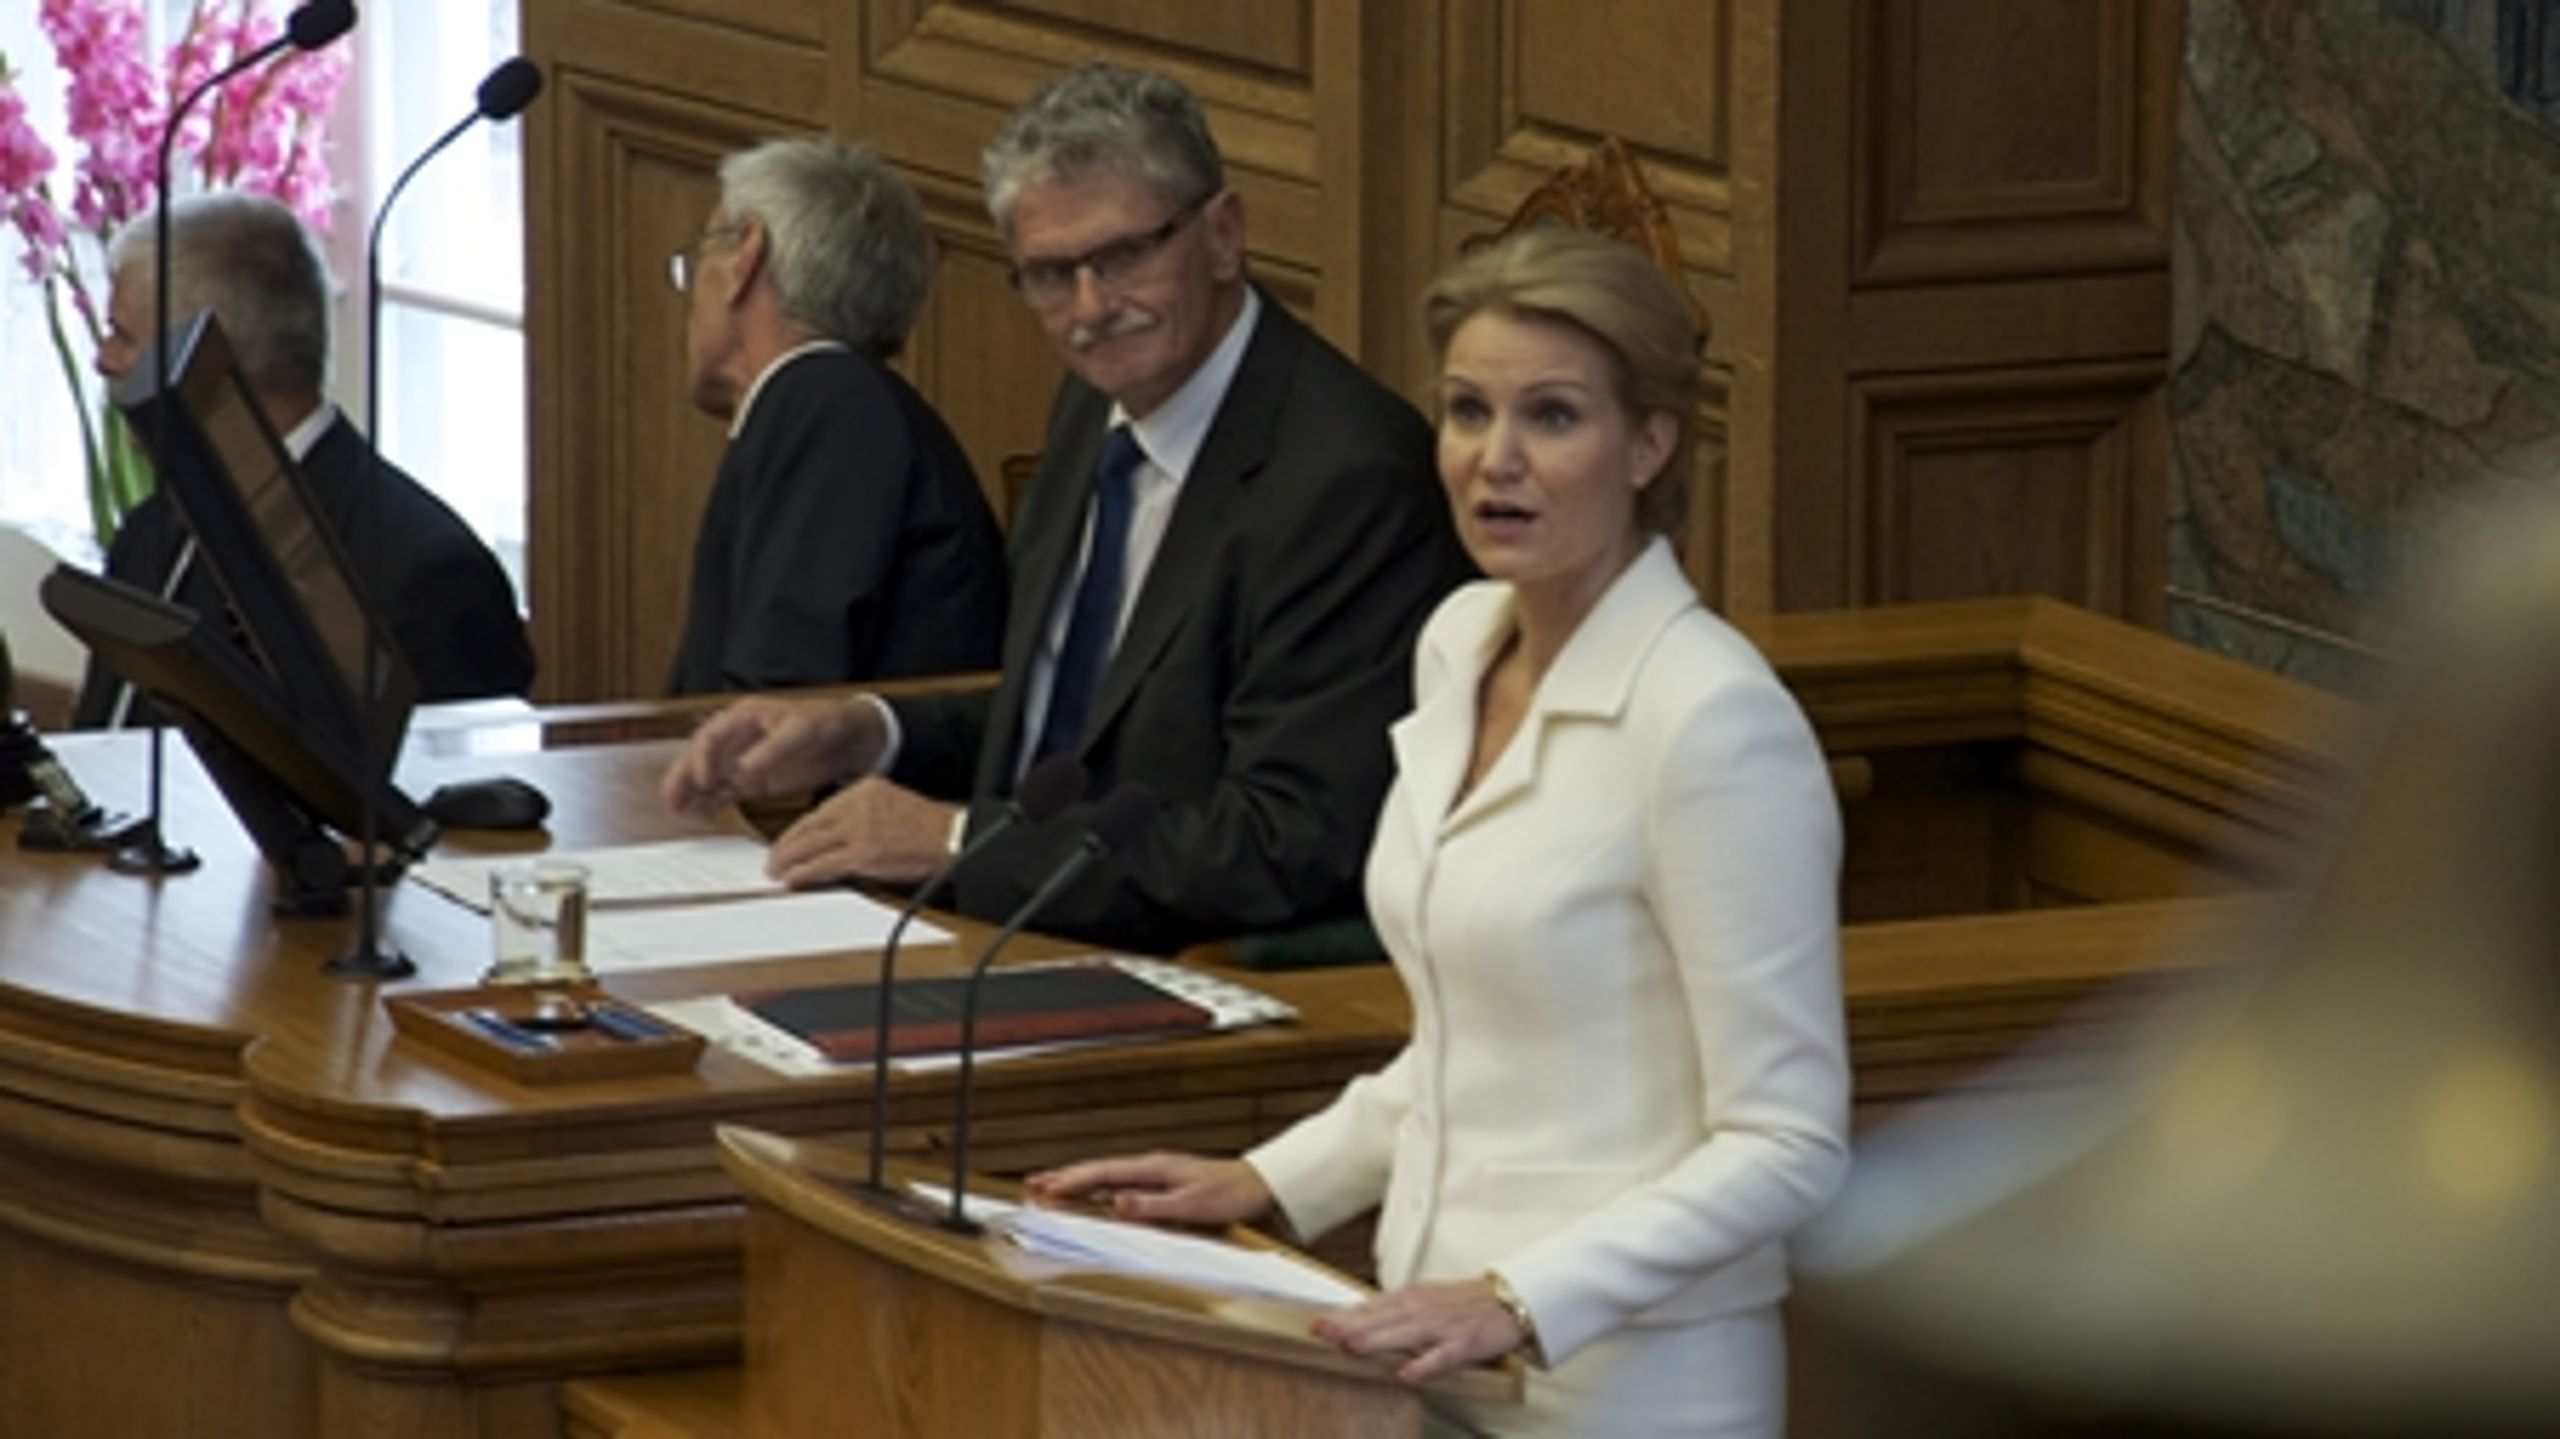 Thorning nærmer sig stødt og roligt Løkke i kampen om at være vælgernes foretrukne statsminister-kandidat.